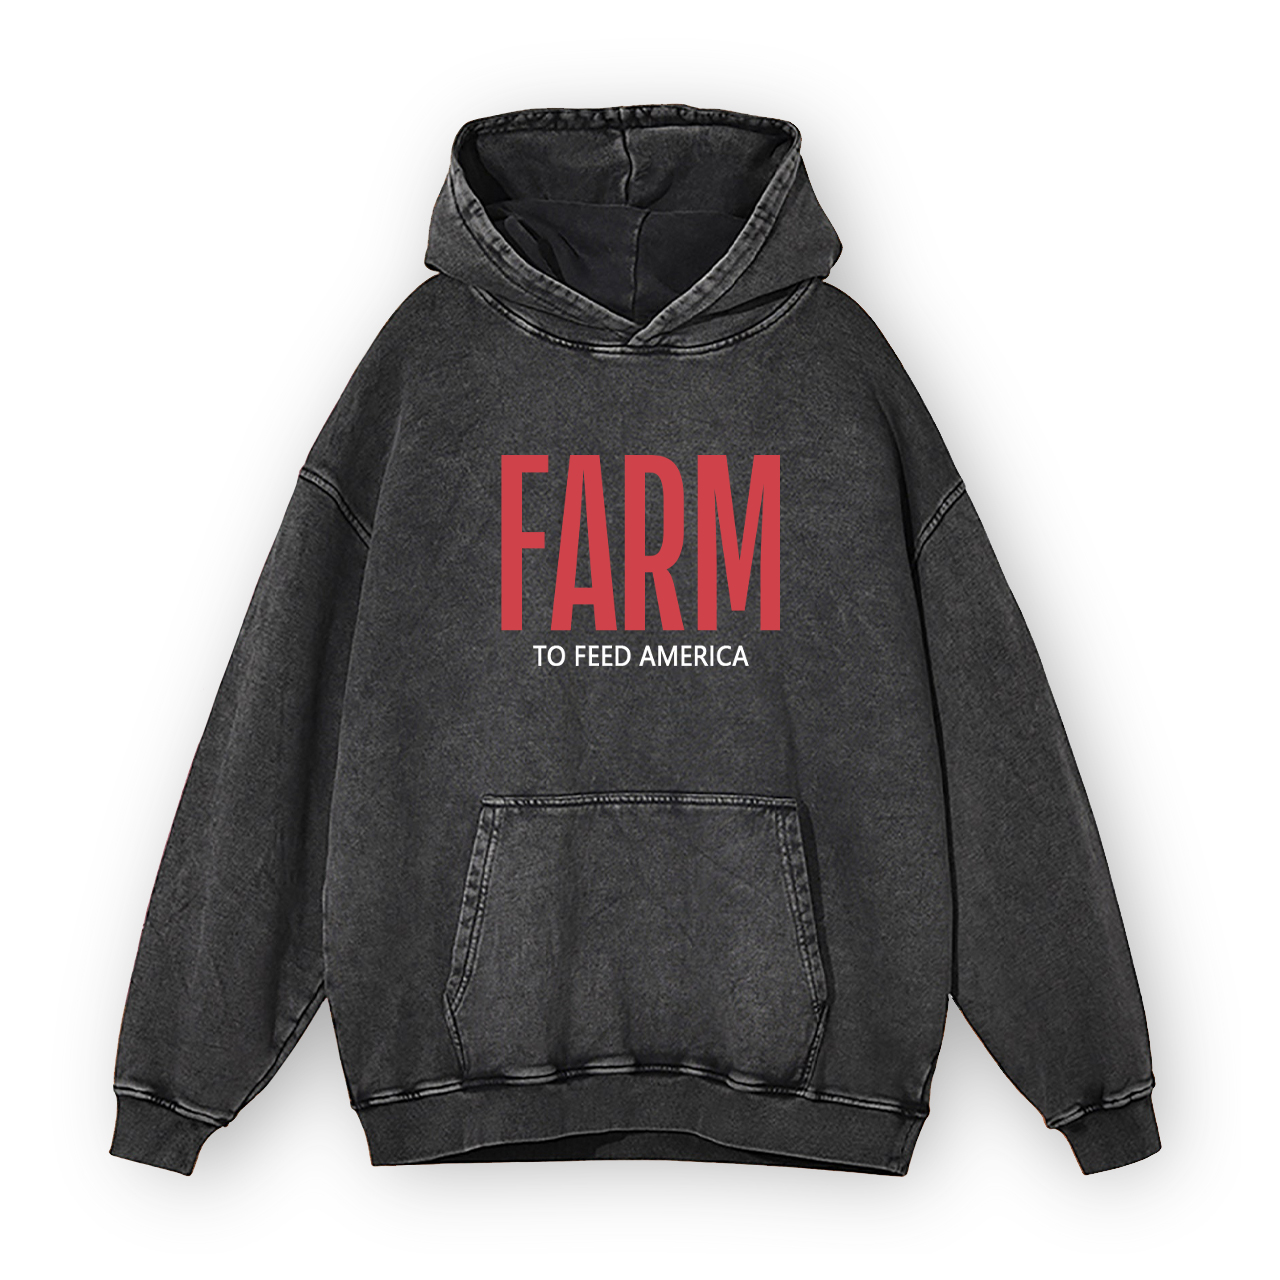 Farm to Feed America Garment-Dye Hoodies